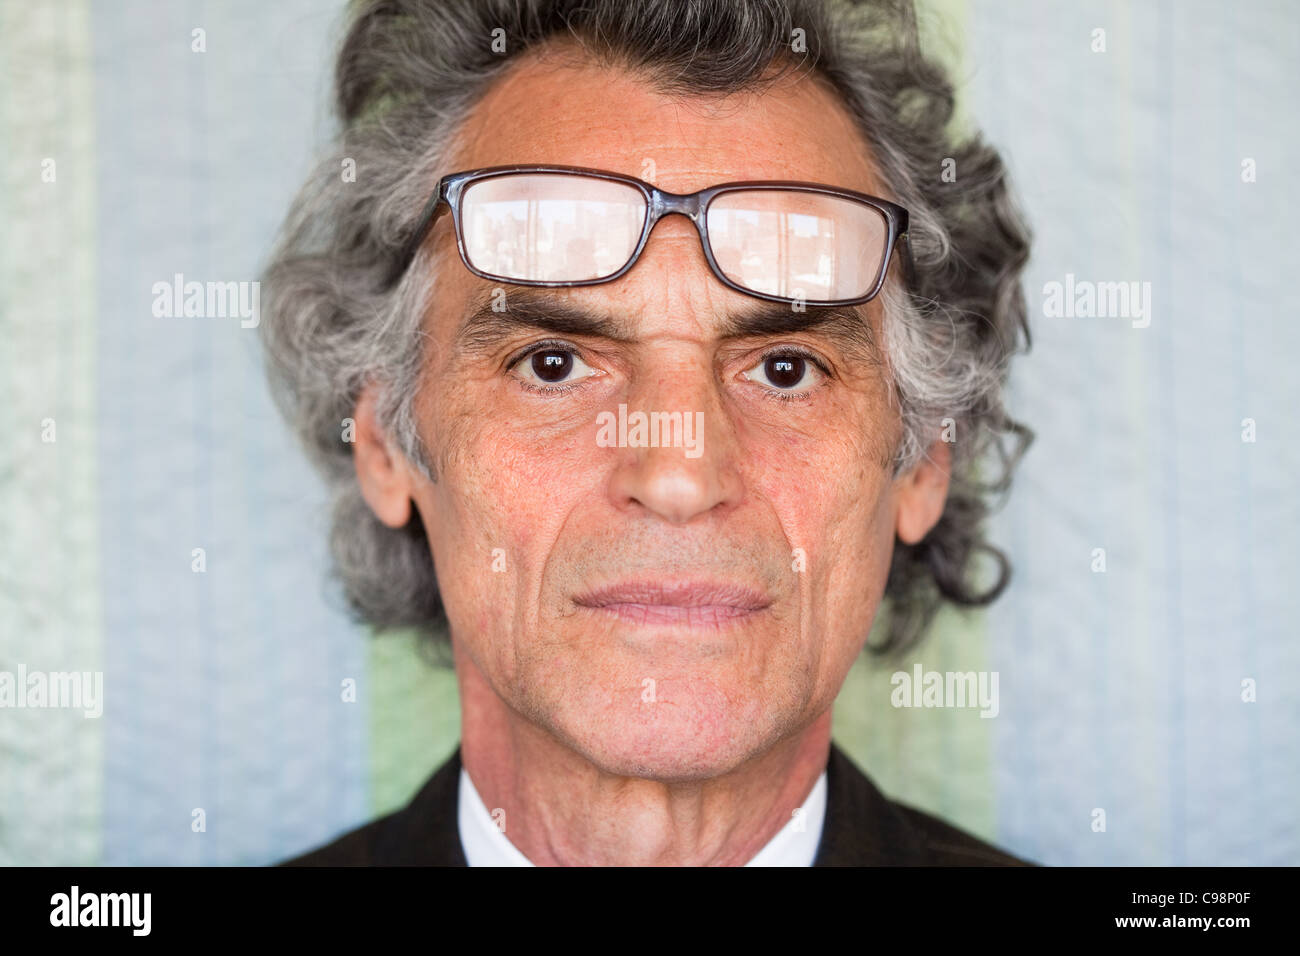 Porträt senior Mann mit Brille auf der Stirn Stockfoto